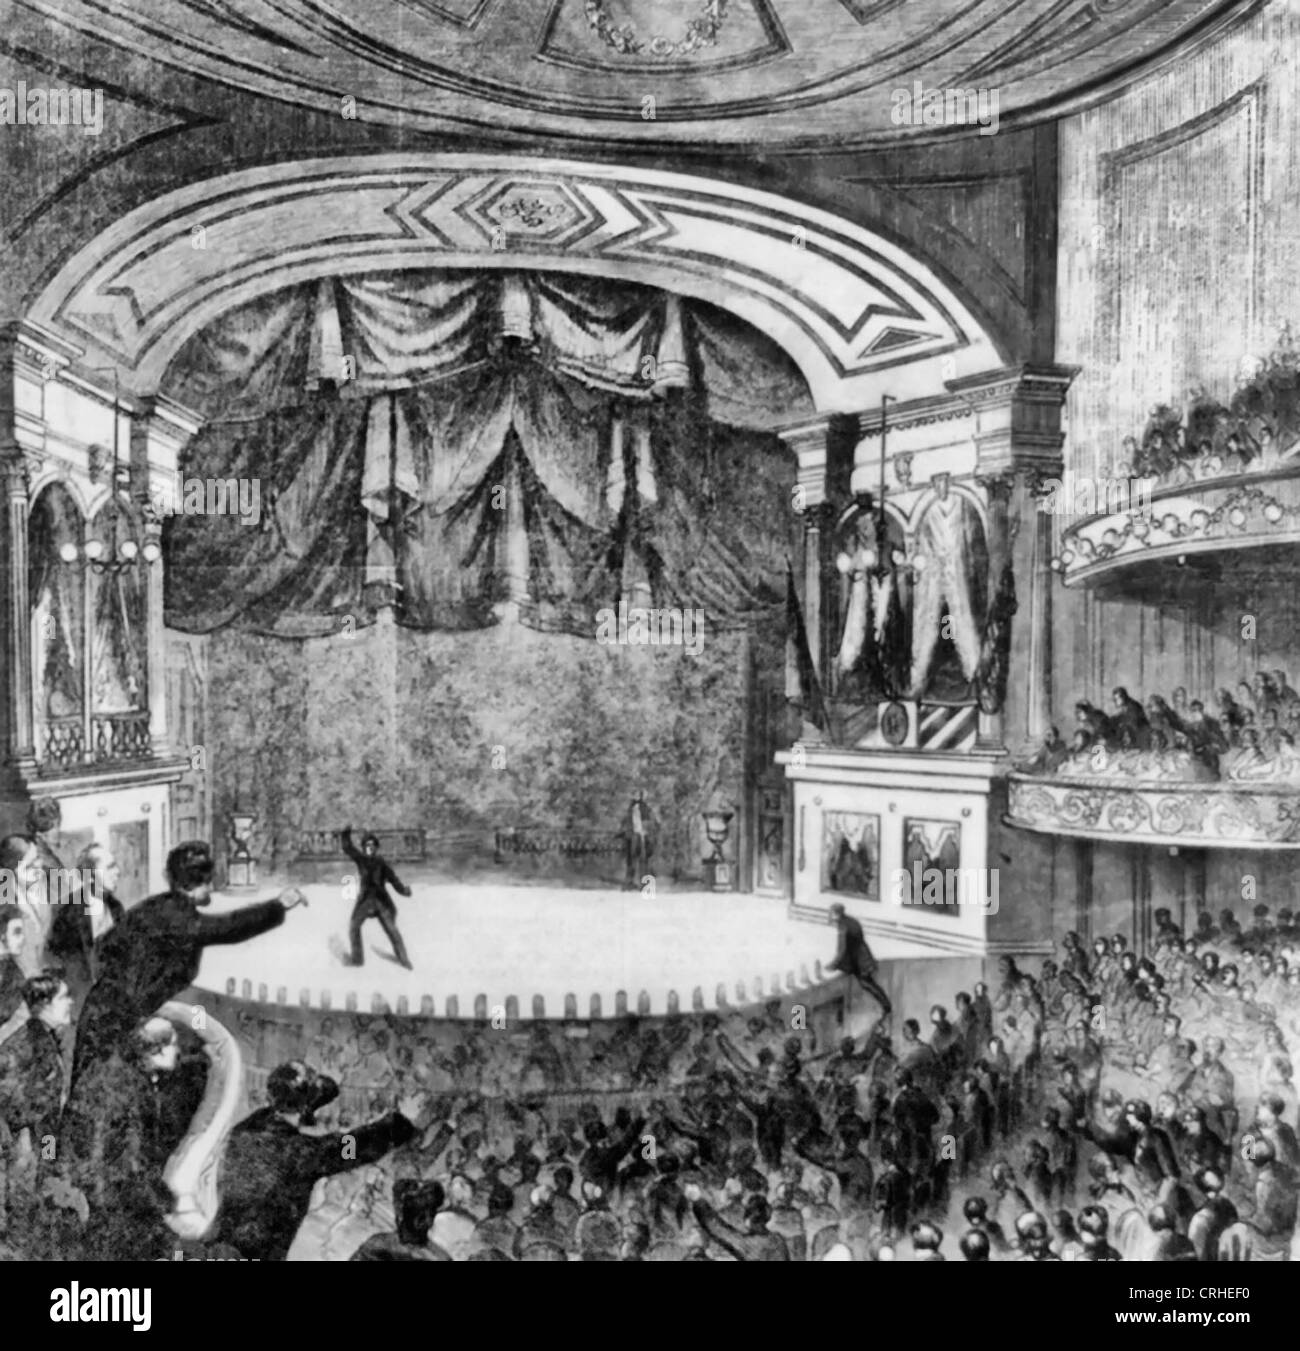 Ermordung von Präsident Lincoln; Der Attentäter Rückzug über die Bühne und Mr. Stewart Klettern darauf, ihn zu verfolgen; Erscheinungsbild des Ford Theater in Washington, D.C. nach dem Mord, 1865 Stockfoto